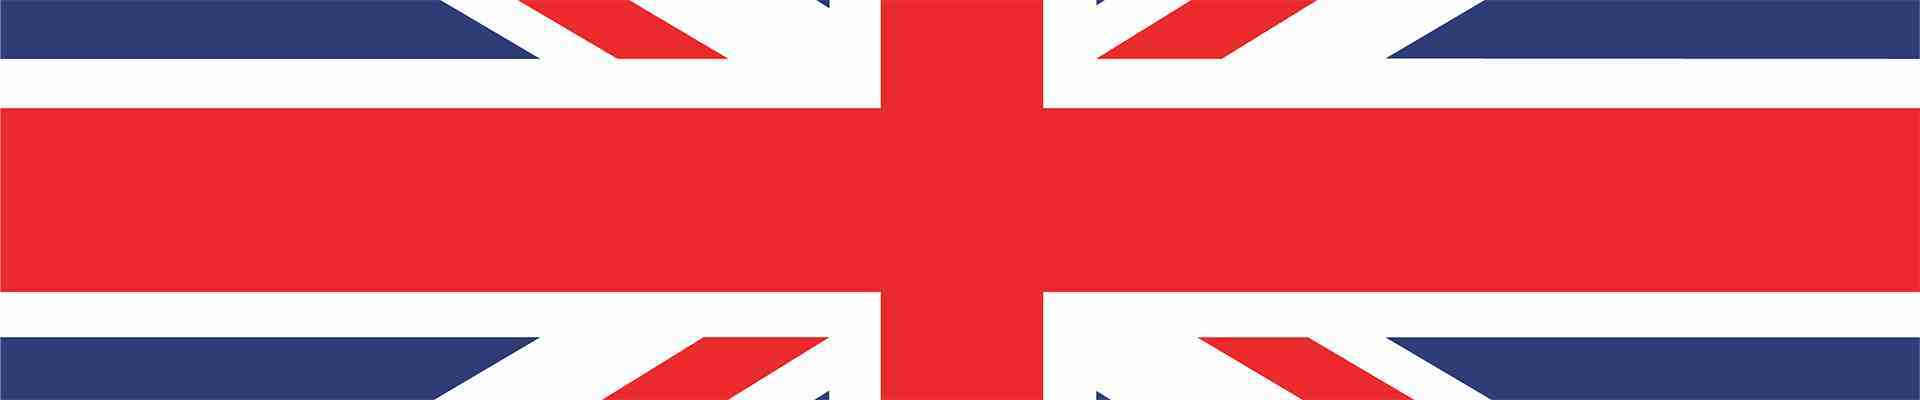 Birleşik Krallık bayrağından bir dilim